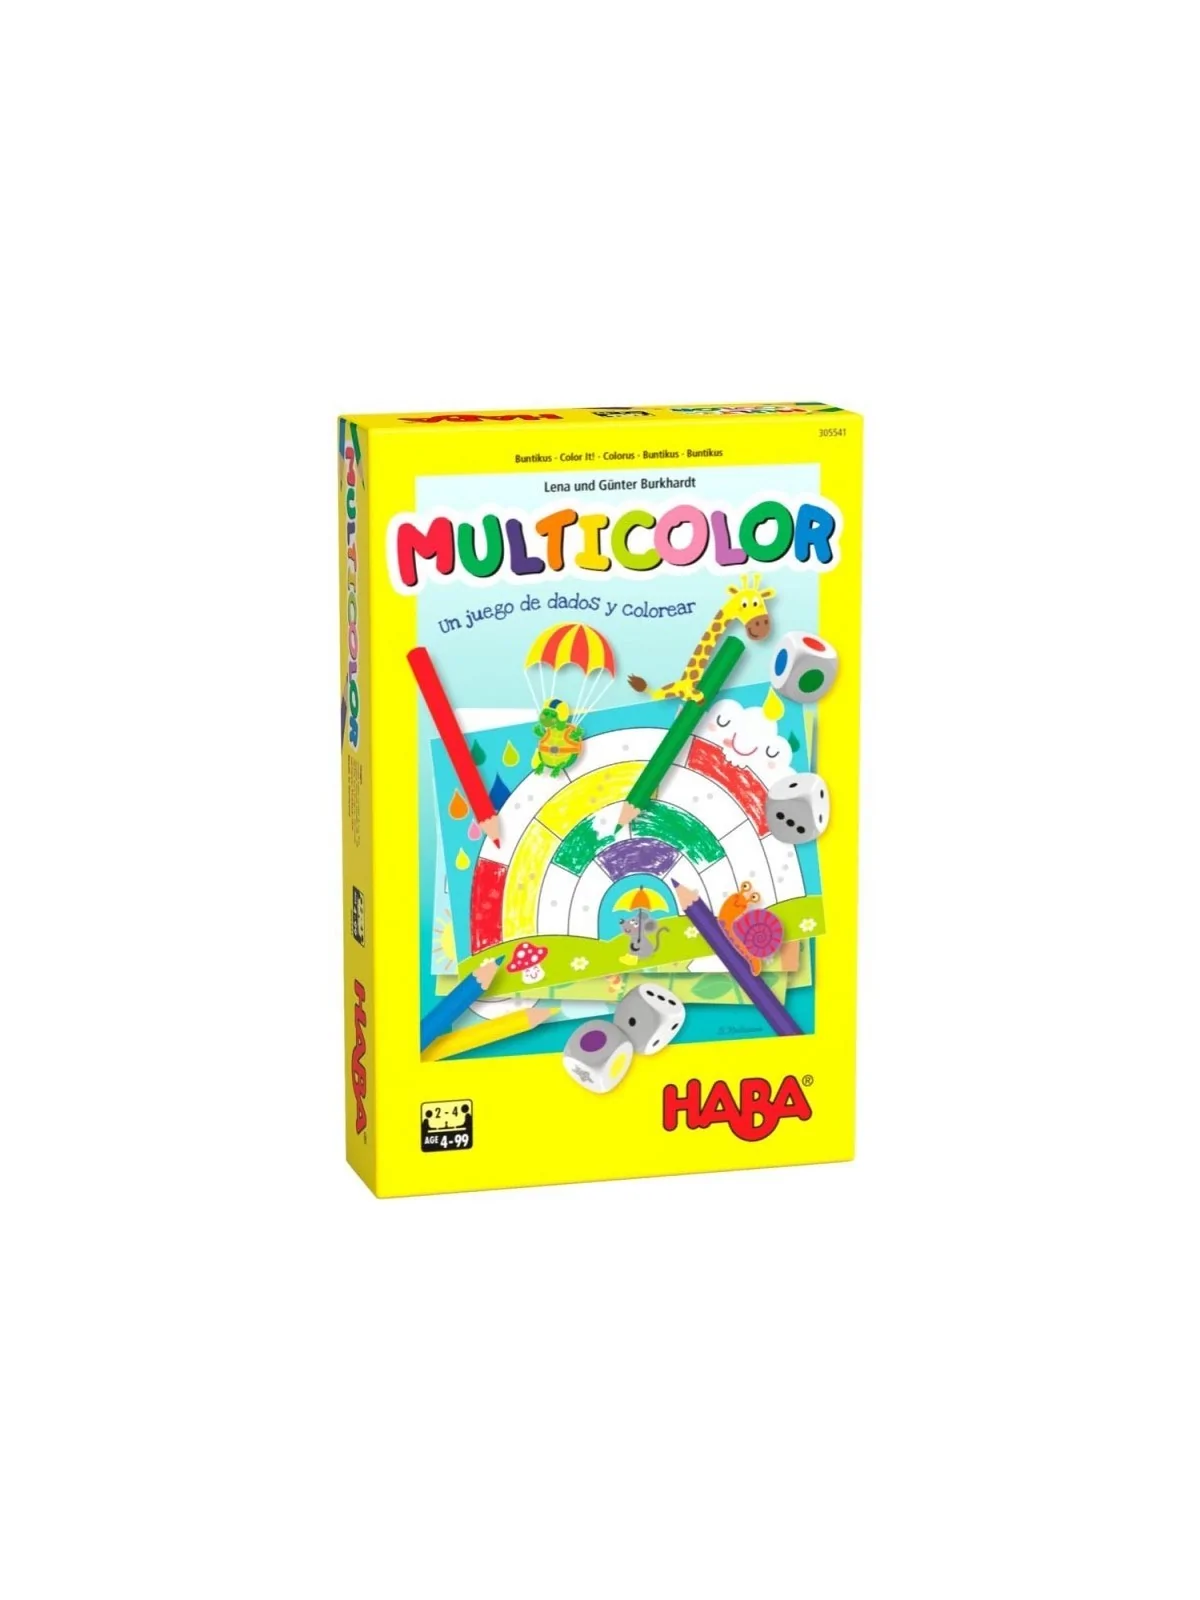 Comprar Multicolor barato al mejor precio 12,59 € de Haba